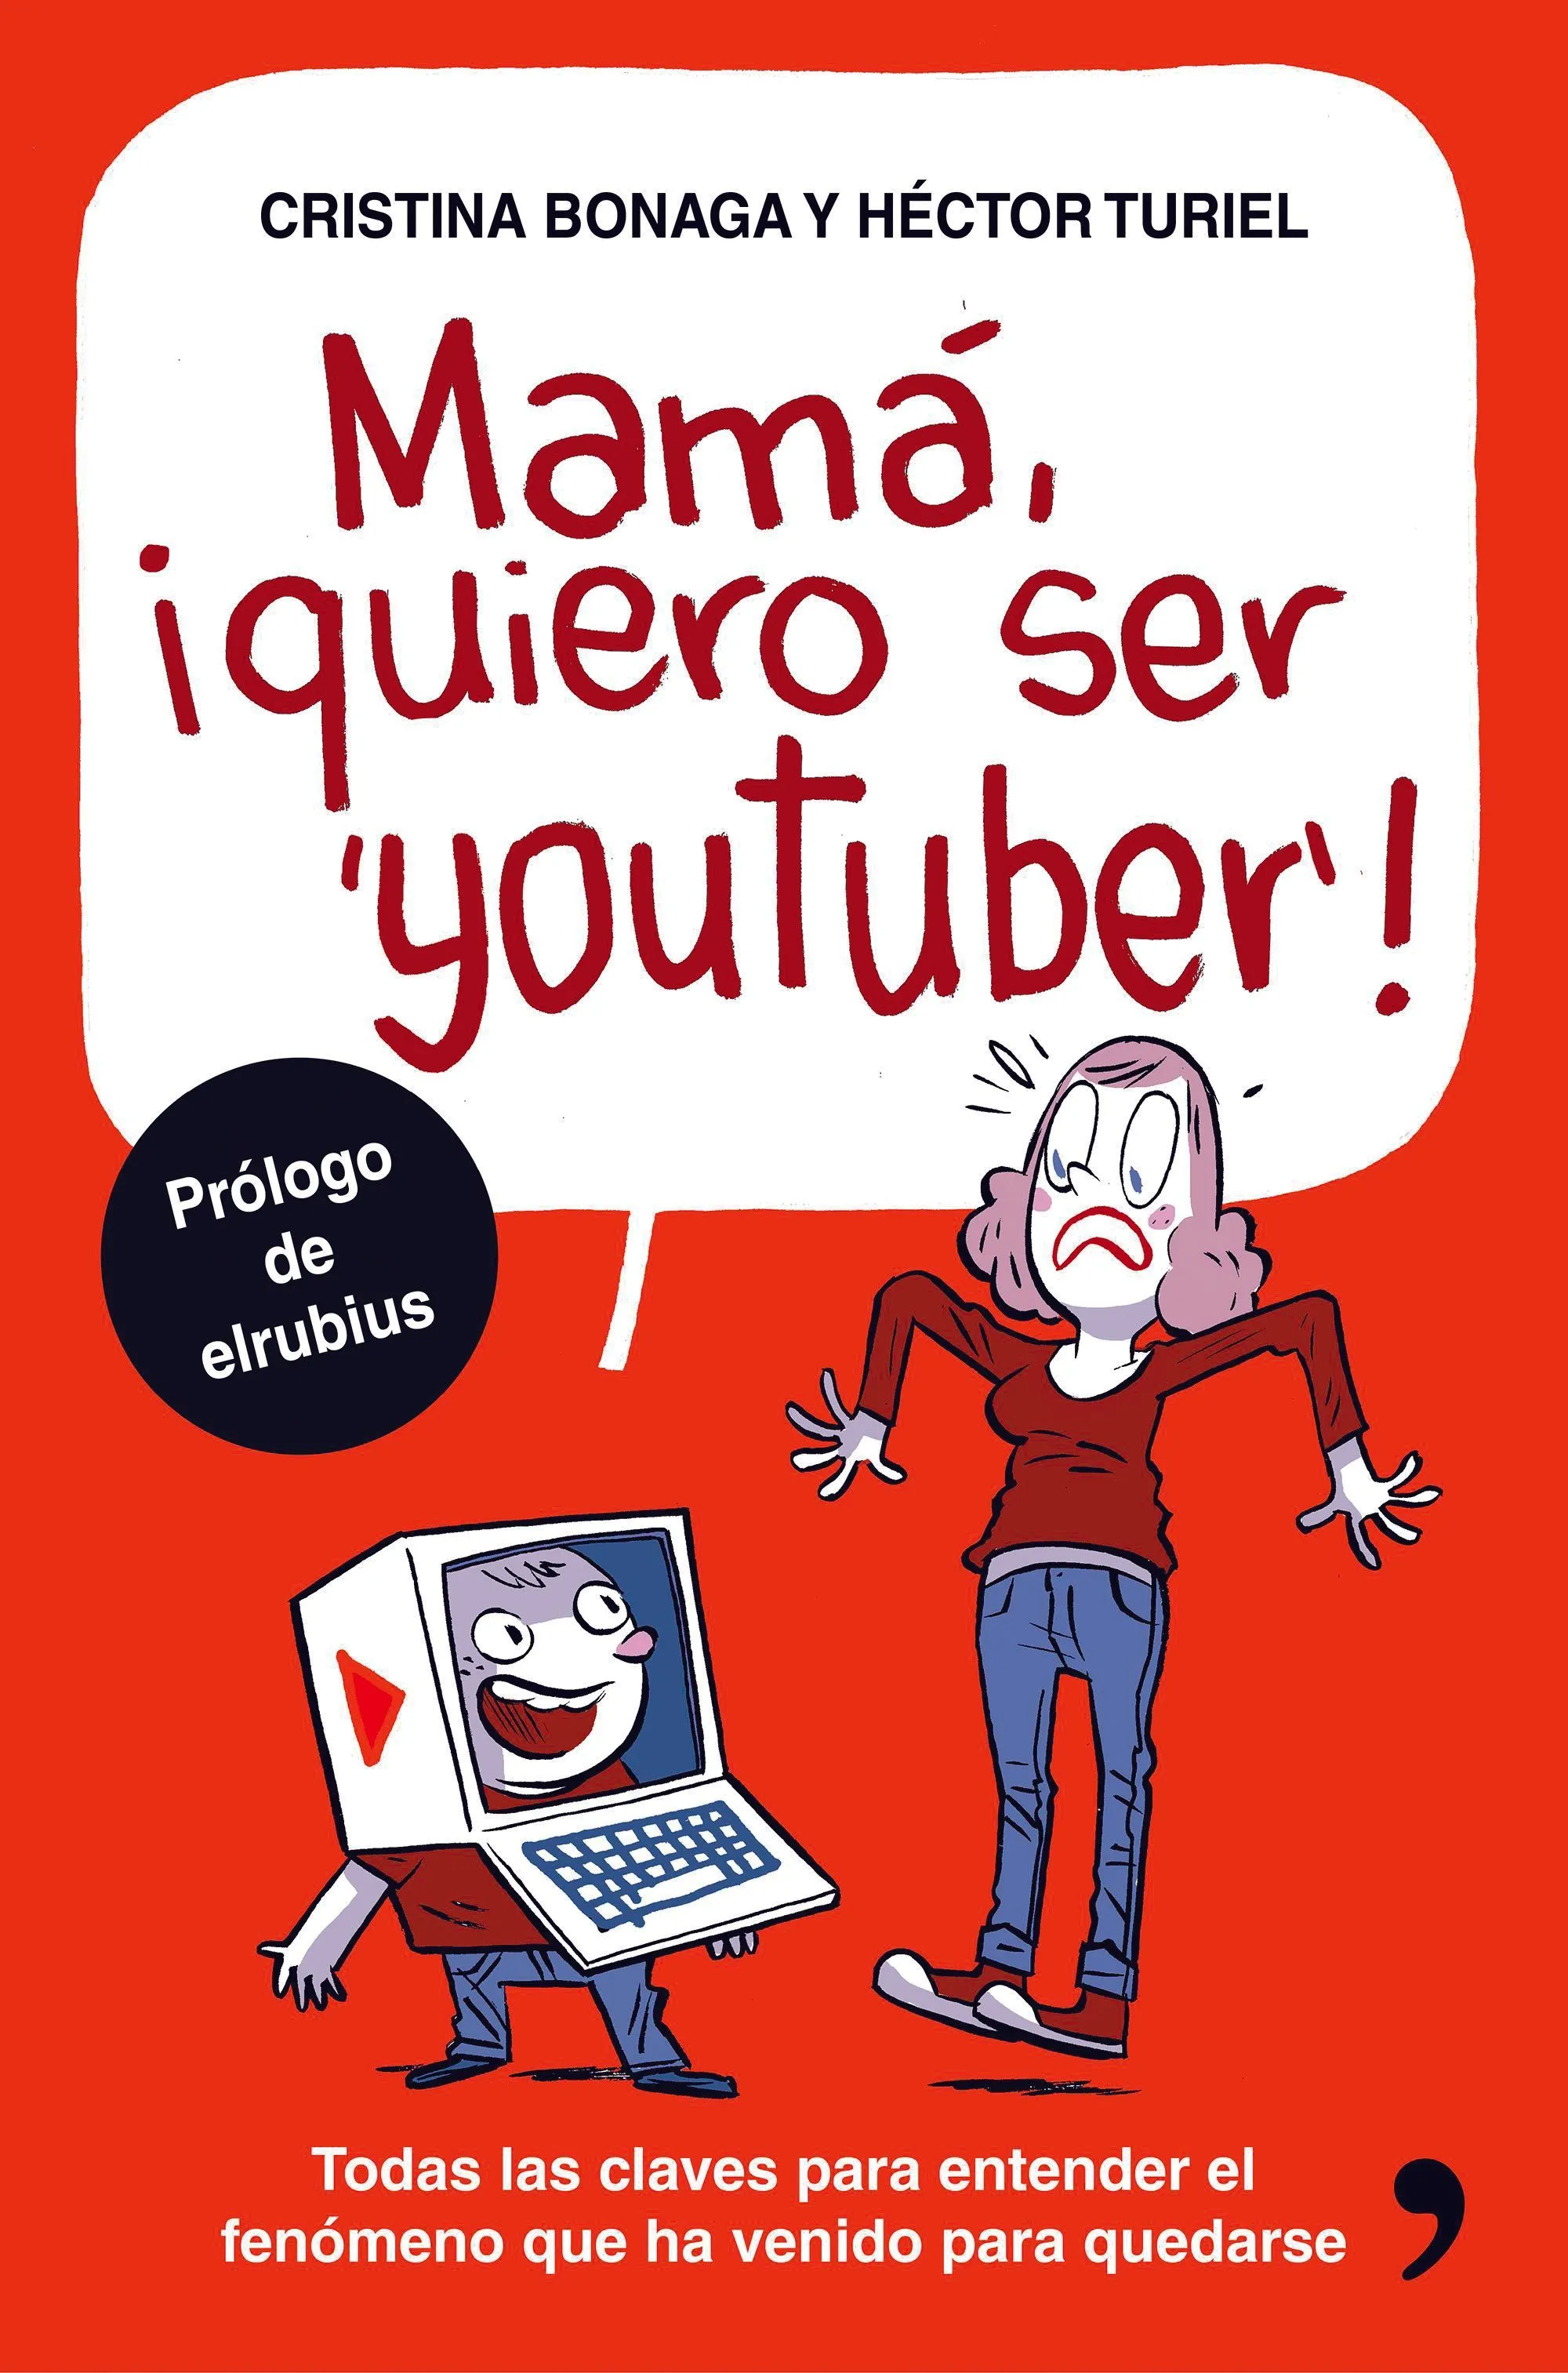 Portada del libro Mamá, ¡quiero ser youtuber!, Cristina Bonaga y Héctor Turiel, 2016.